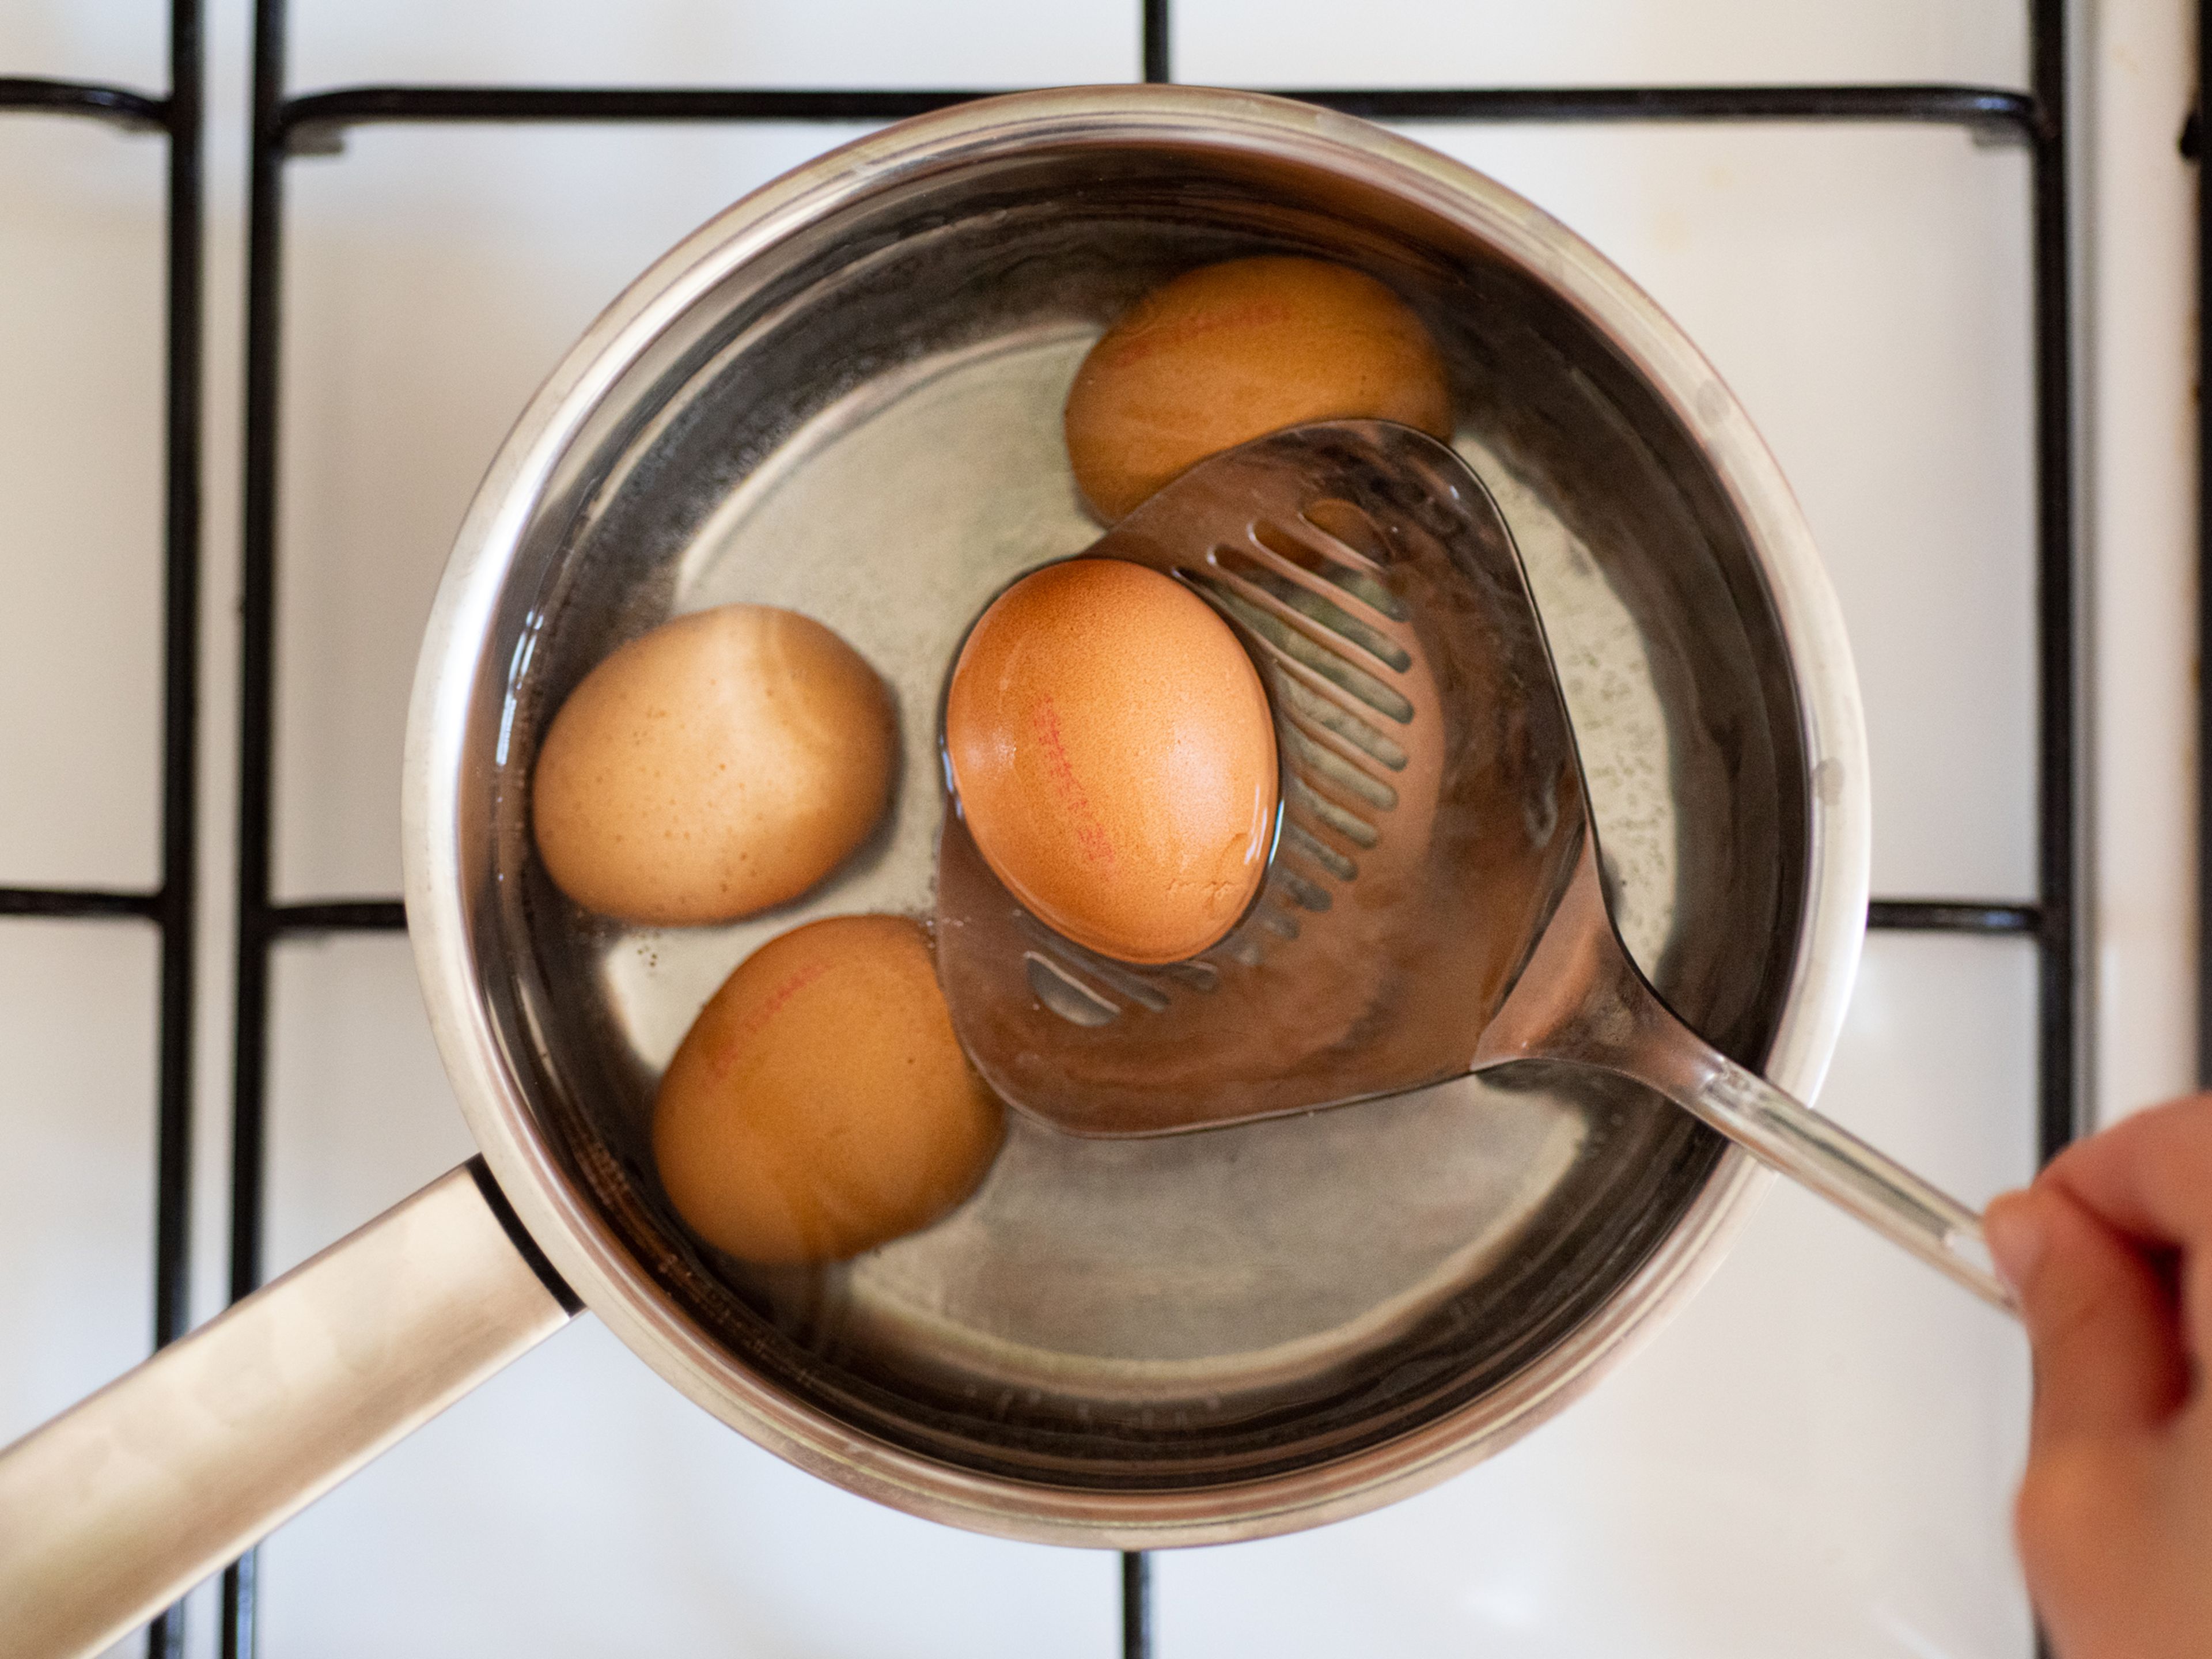 In der Zwischenzeit einen großen Topf mit Wasser bei mittlerer bis hoher Hitze zum Kochen bringen. Sobald das Wasser kocht, Eier hinzufügen. Die Eier ca. 7 - 8 Min. kochen, dann herausnehmen und unter fliessendem kaltem Wasser abschrecken. Sobald die Eier abgekühlt sind, schälen, in Scheiben schneiden und beiseite stellen.